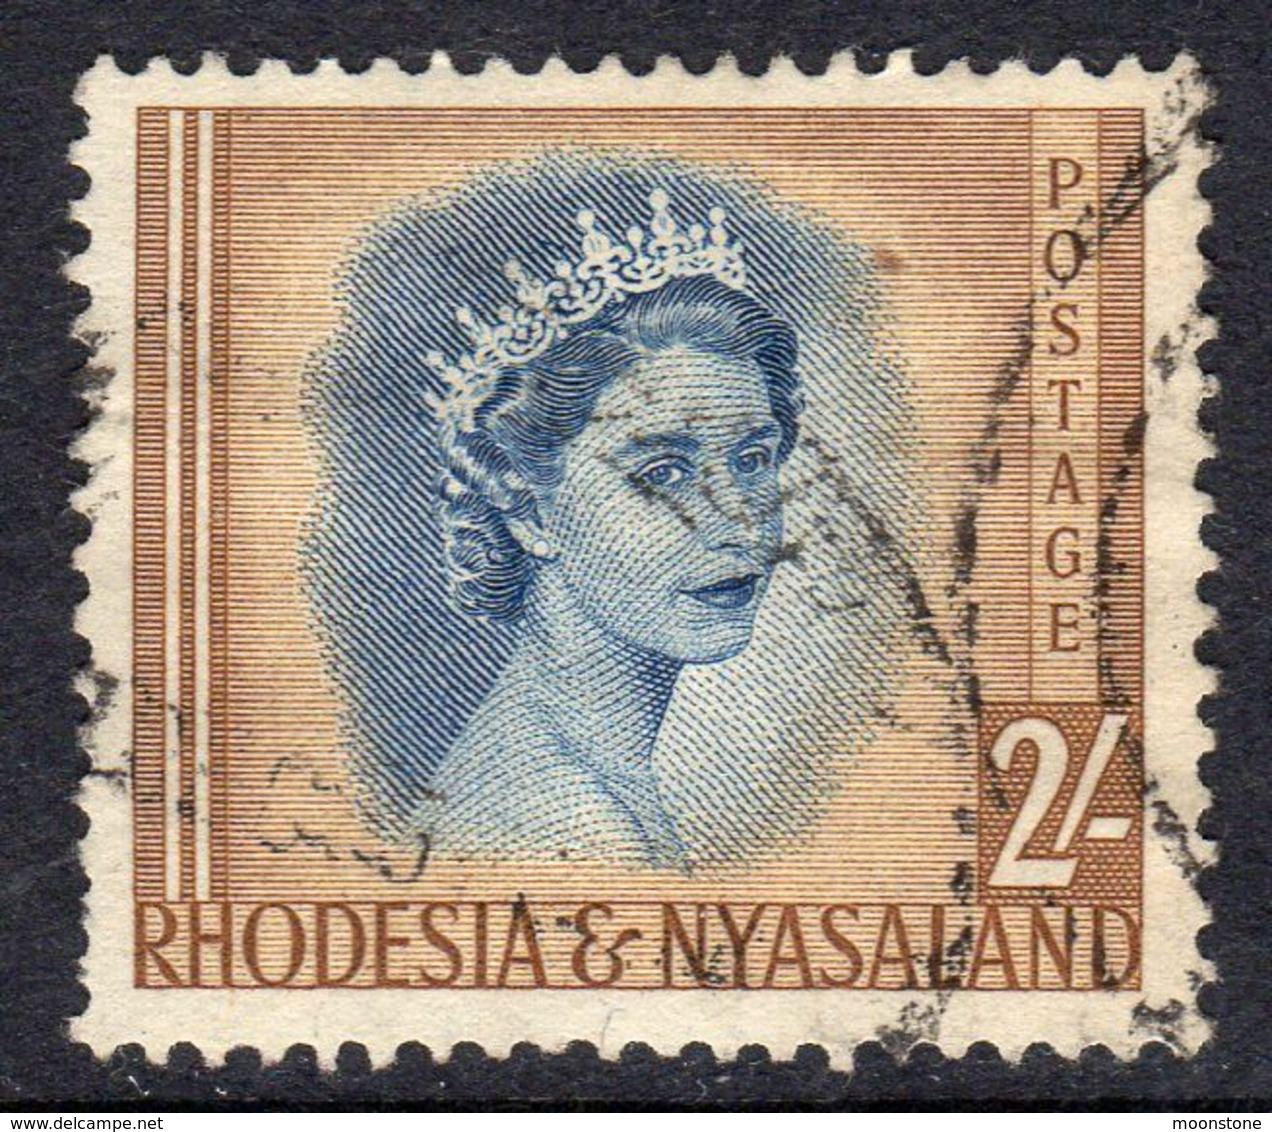 Rhodesia & Nyasaland 1954 Definitives 2/- Value, Used, SG 11 (BA) - Rhodesia & Nyasaland (1954-1963)